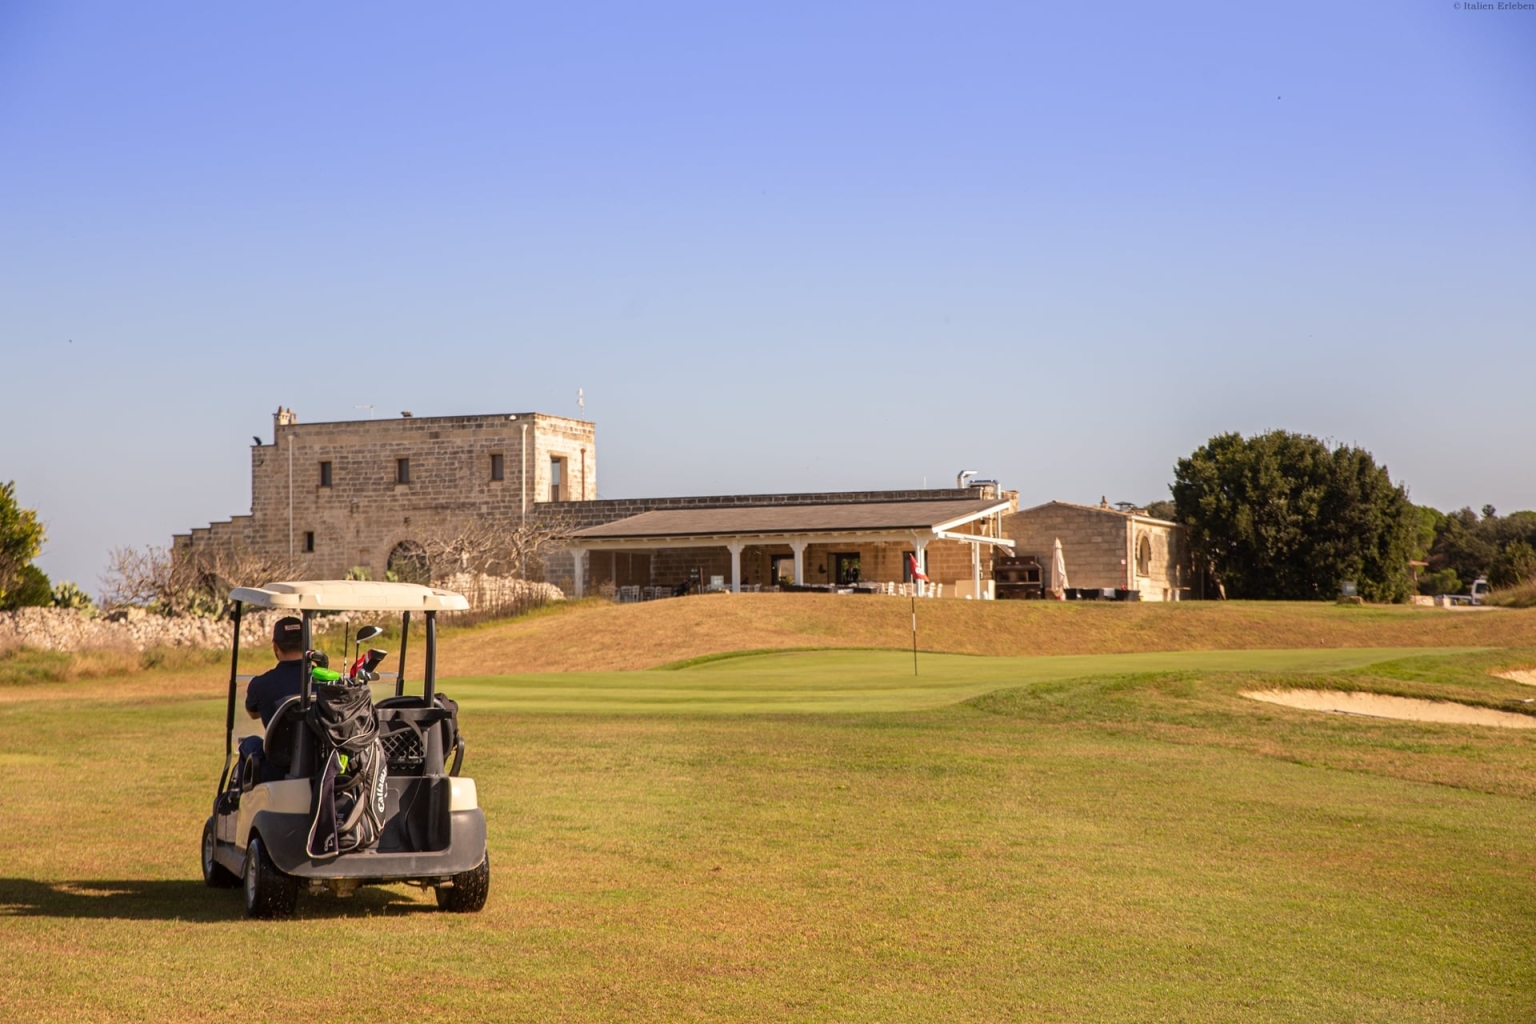 Apulien Golf Resort Acaya Lecce Salento 18 Loch Anlage modern Landschaft Wellness Golfcart